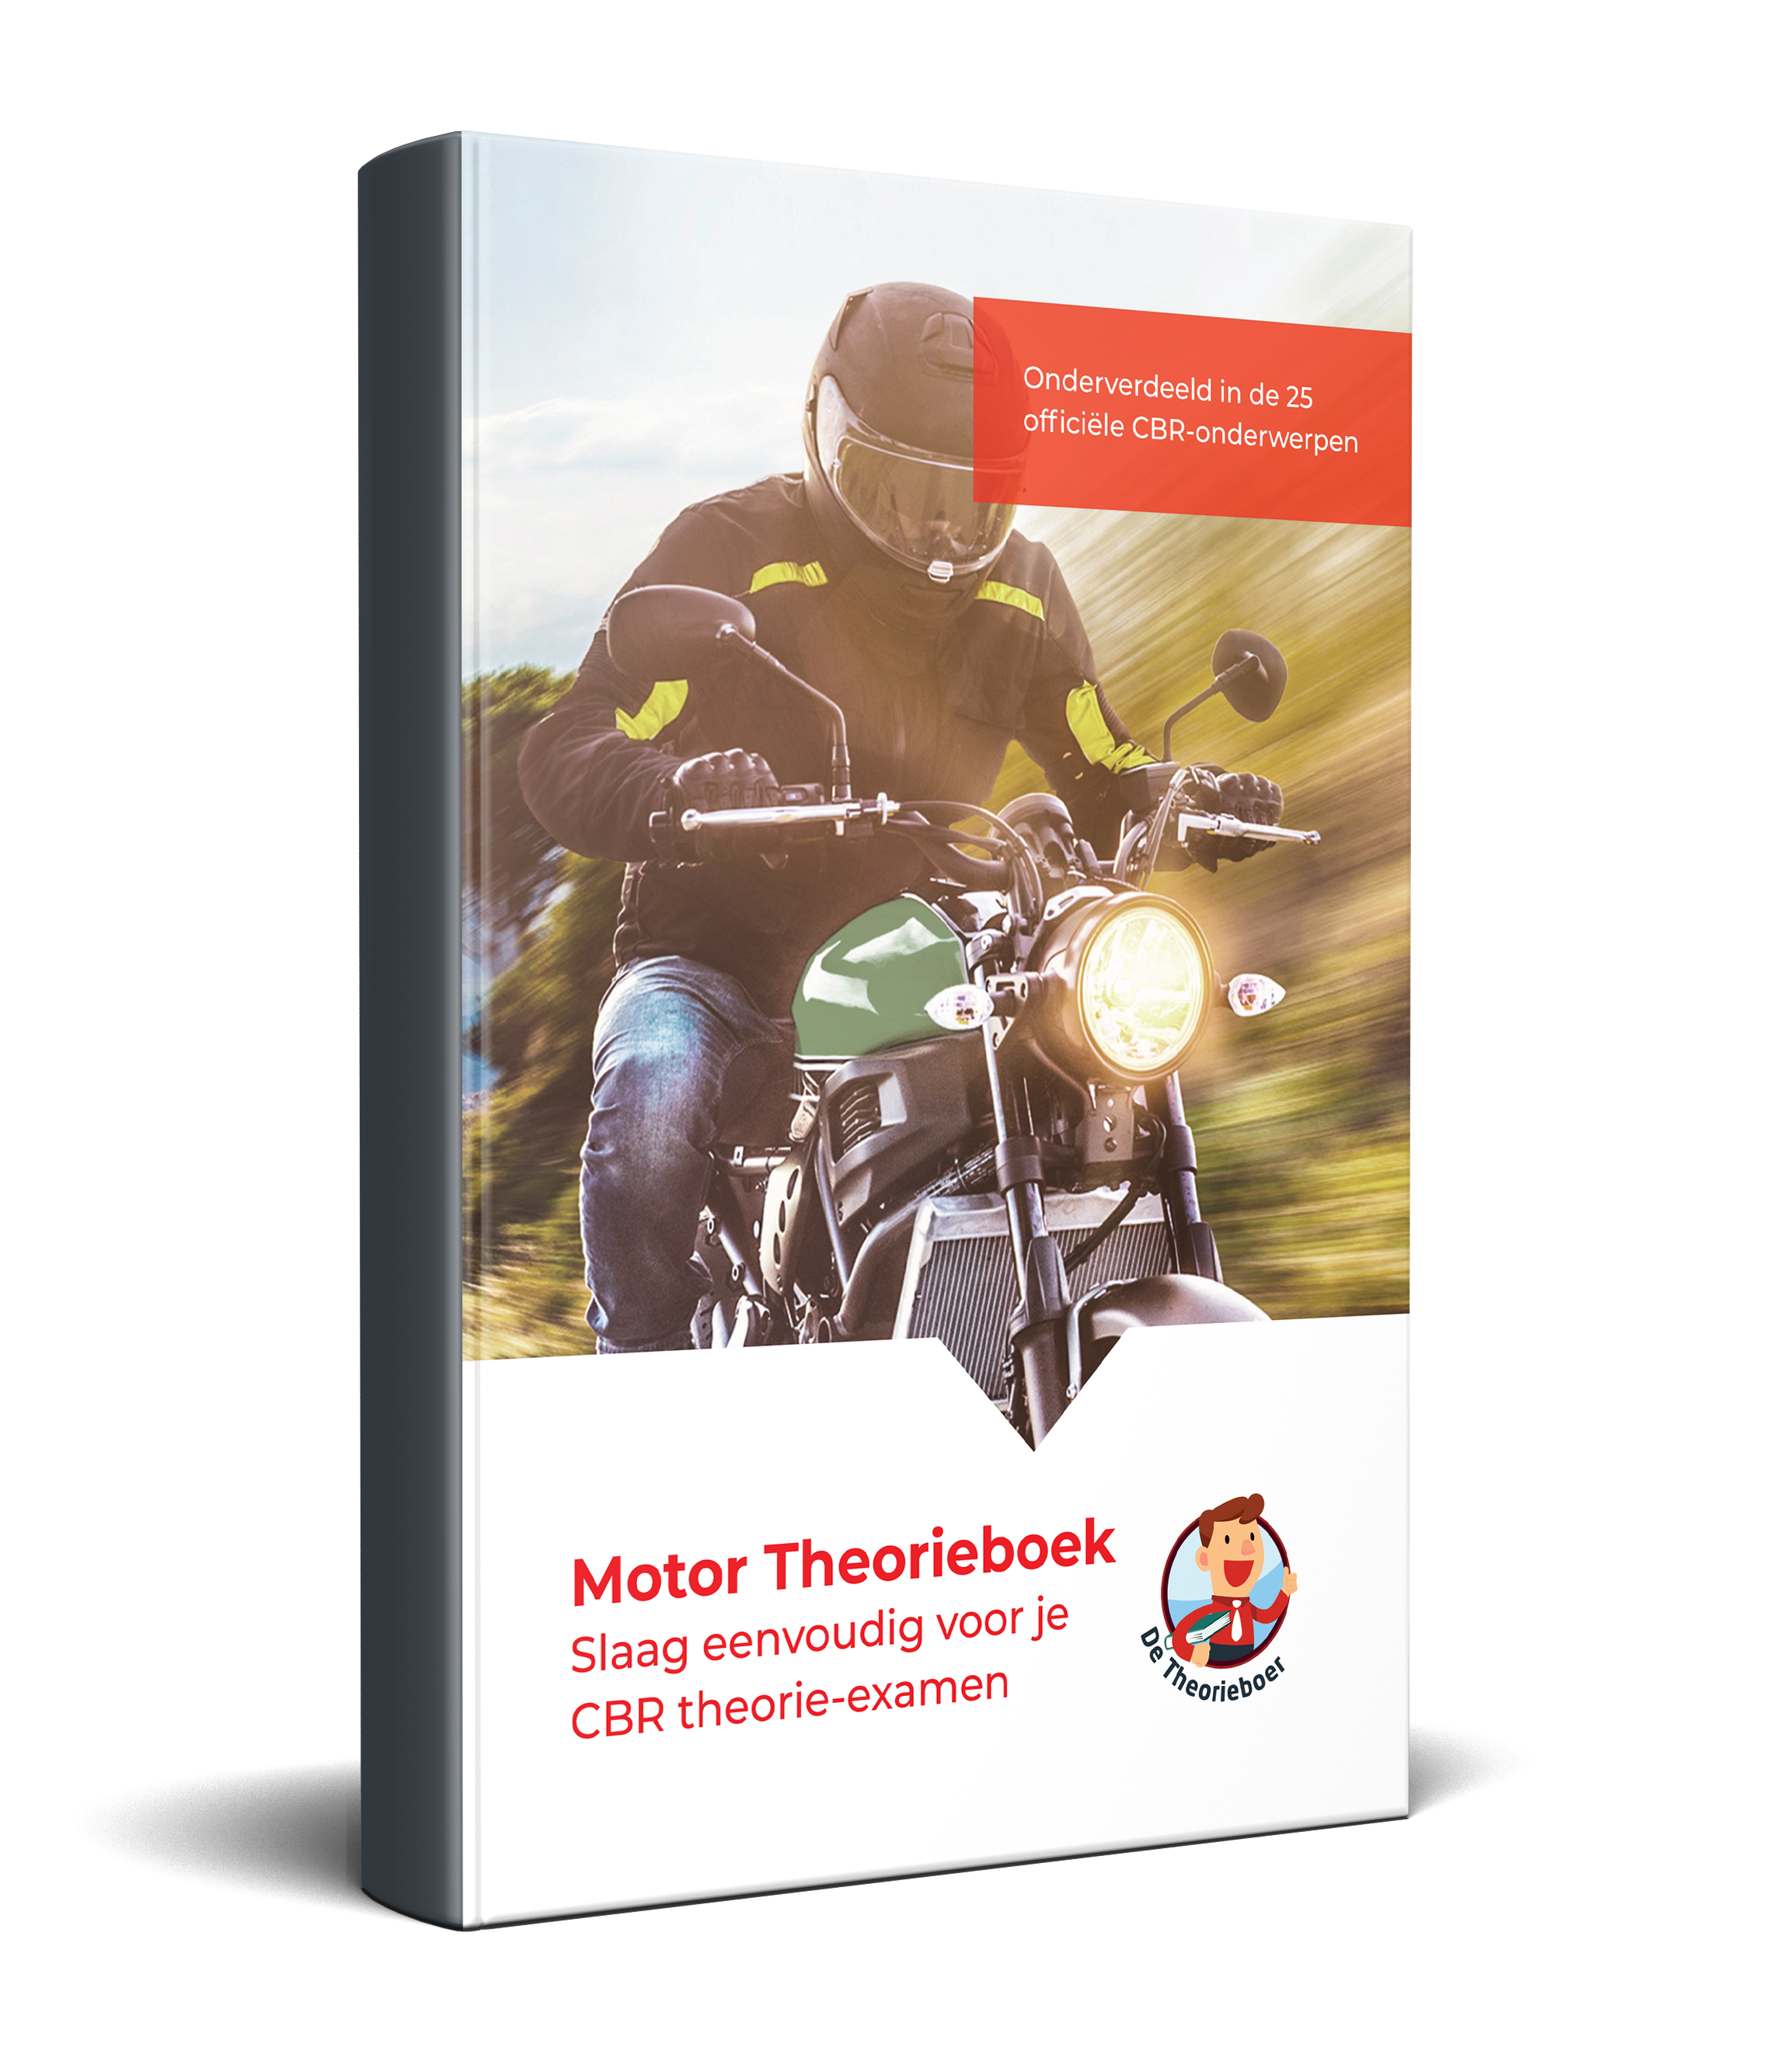 Motor Theorieboek